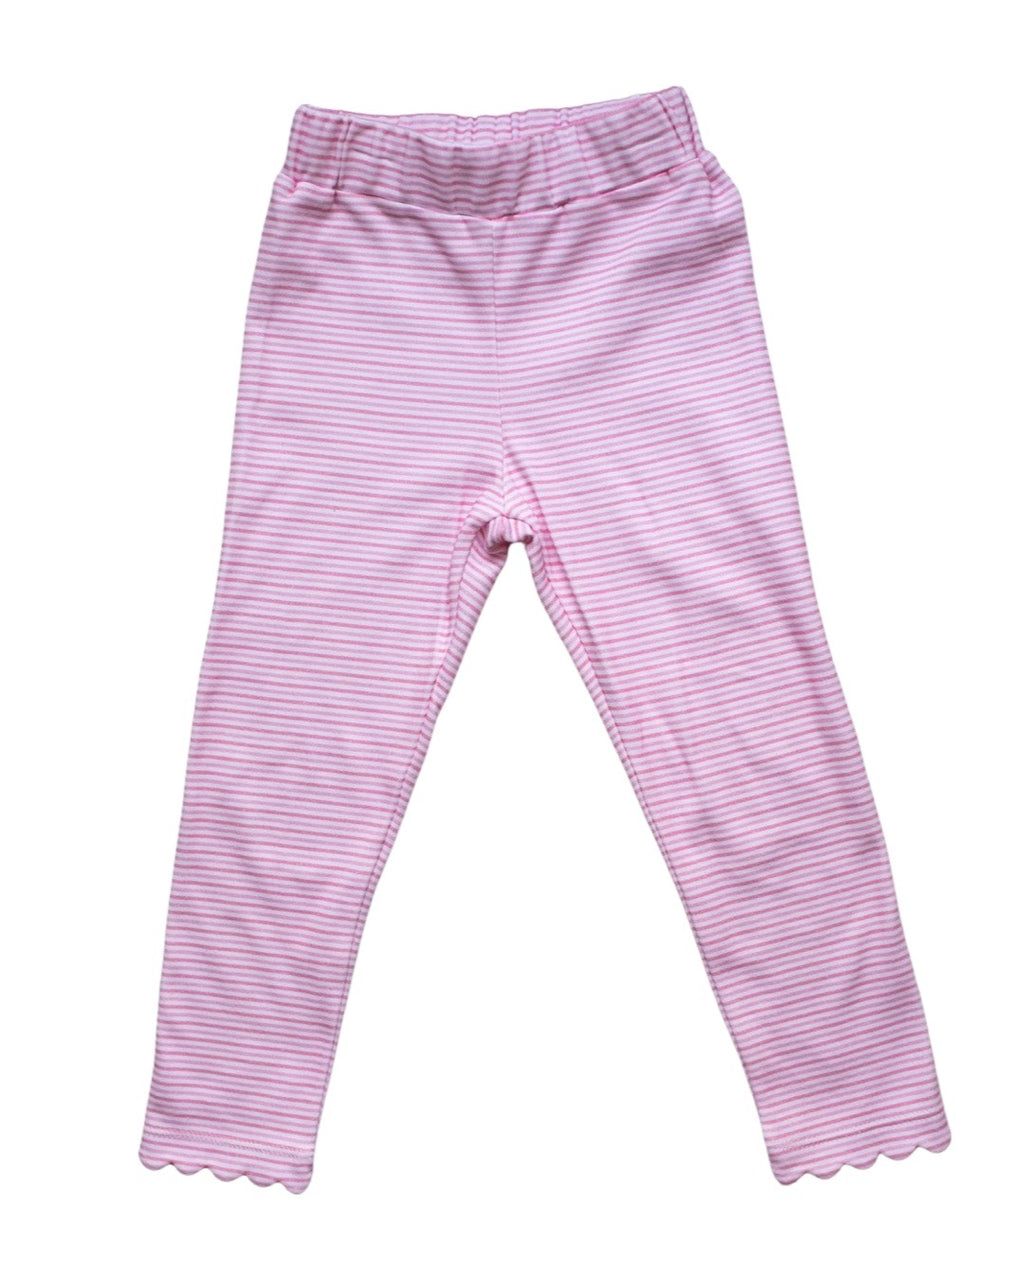 7236 scallop legging powder pink candy stripe